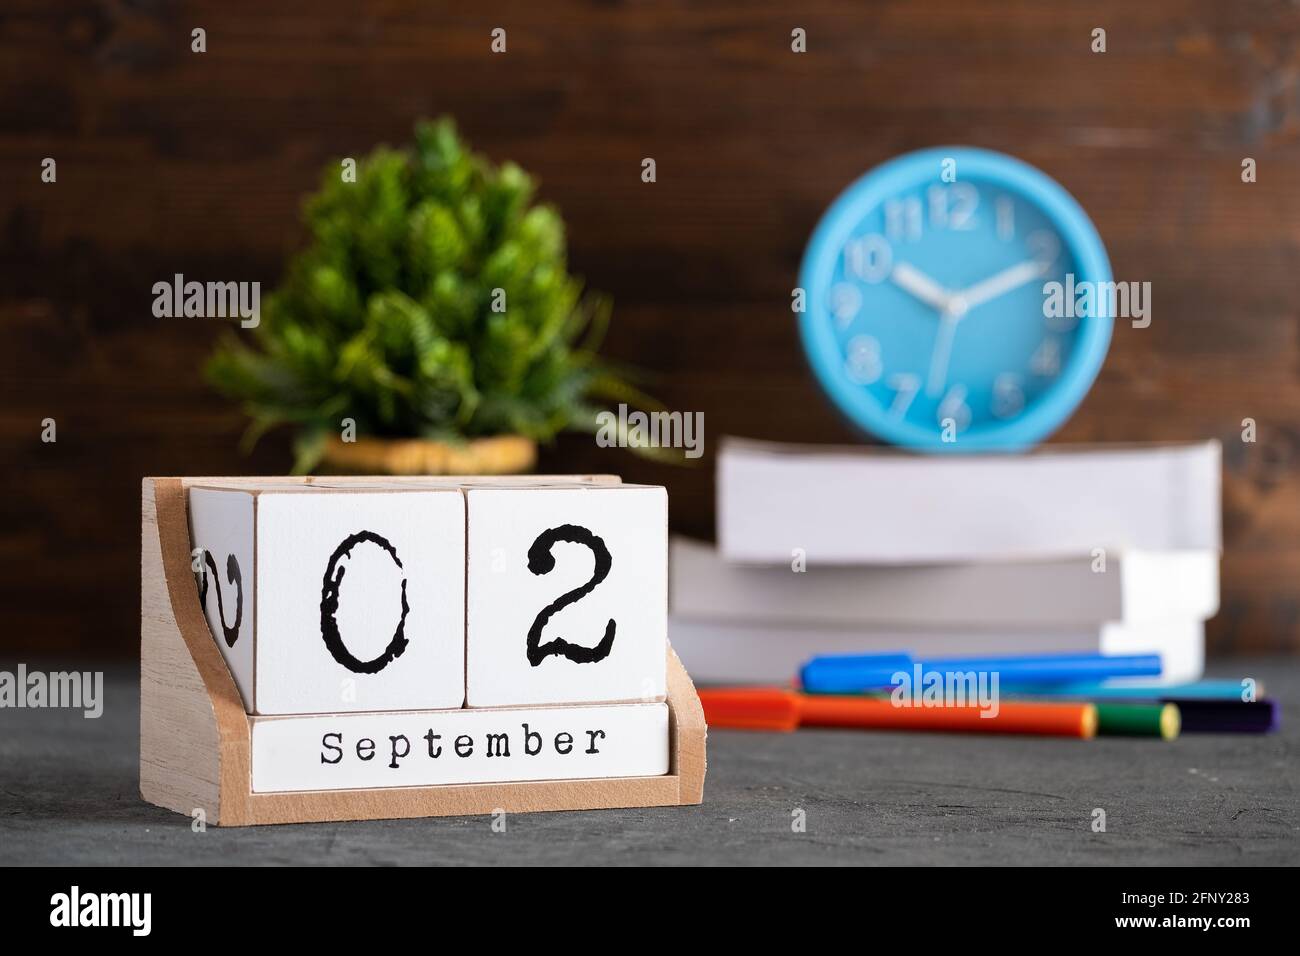 02 septembre. Septembre 02 calendrier cube en bois avec des objets flous sur fond. Banque D'Images